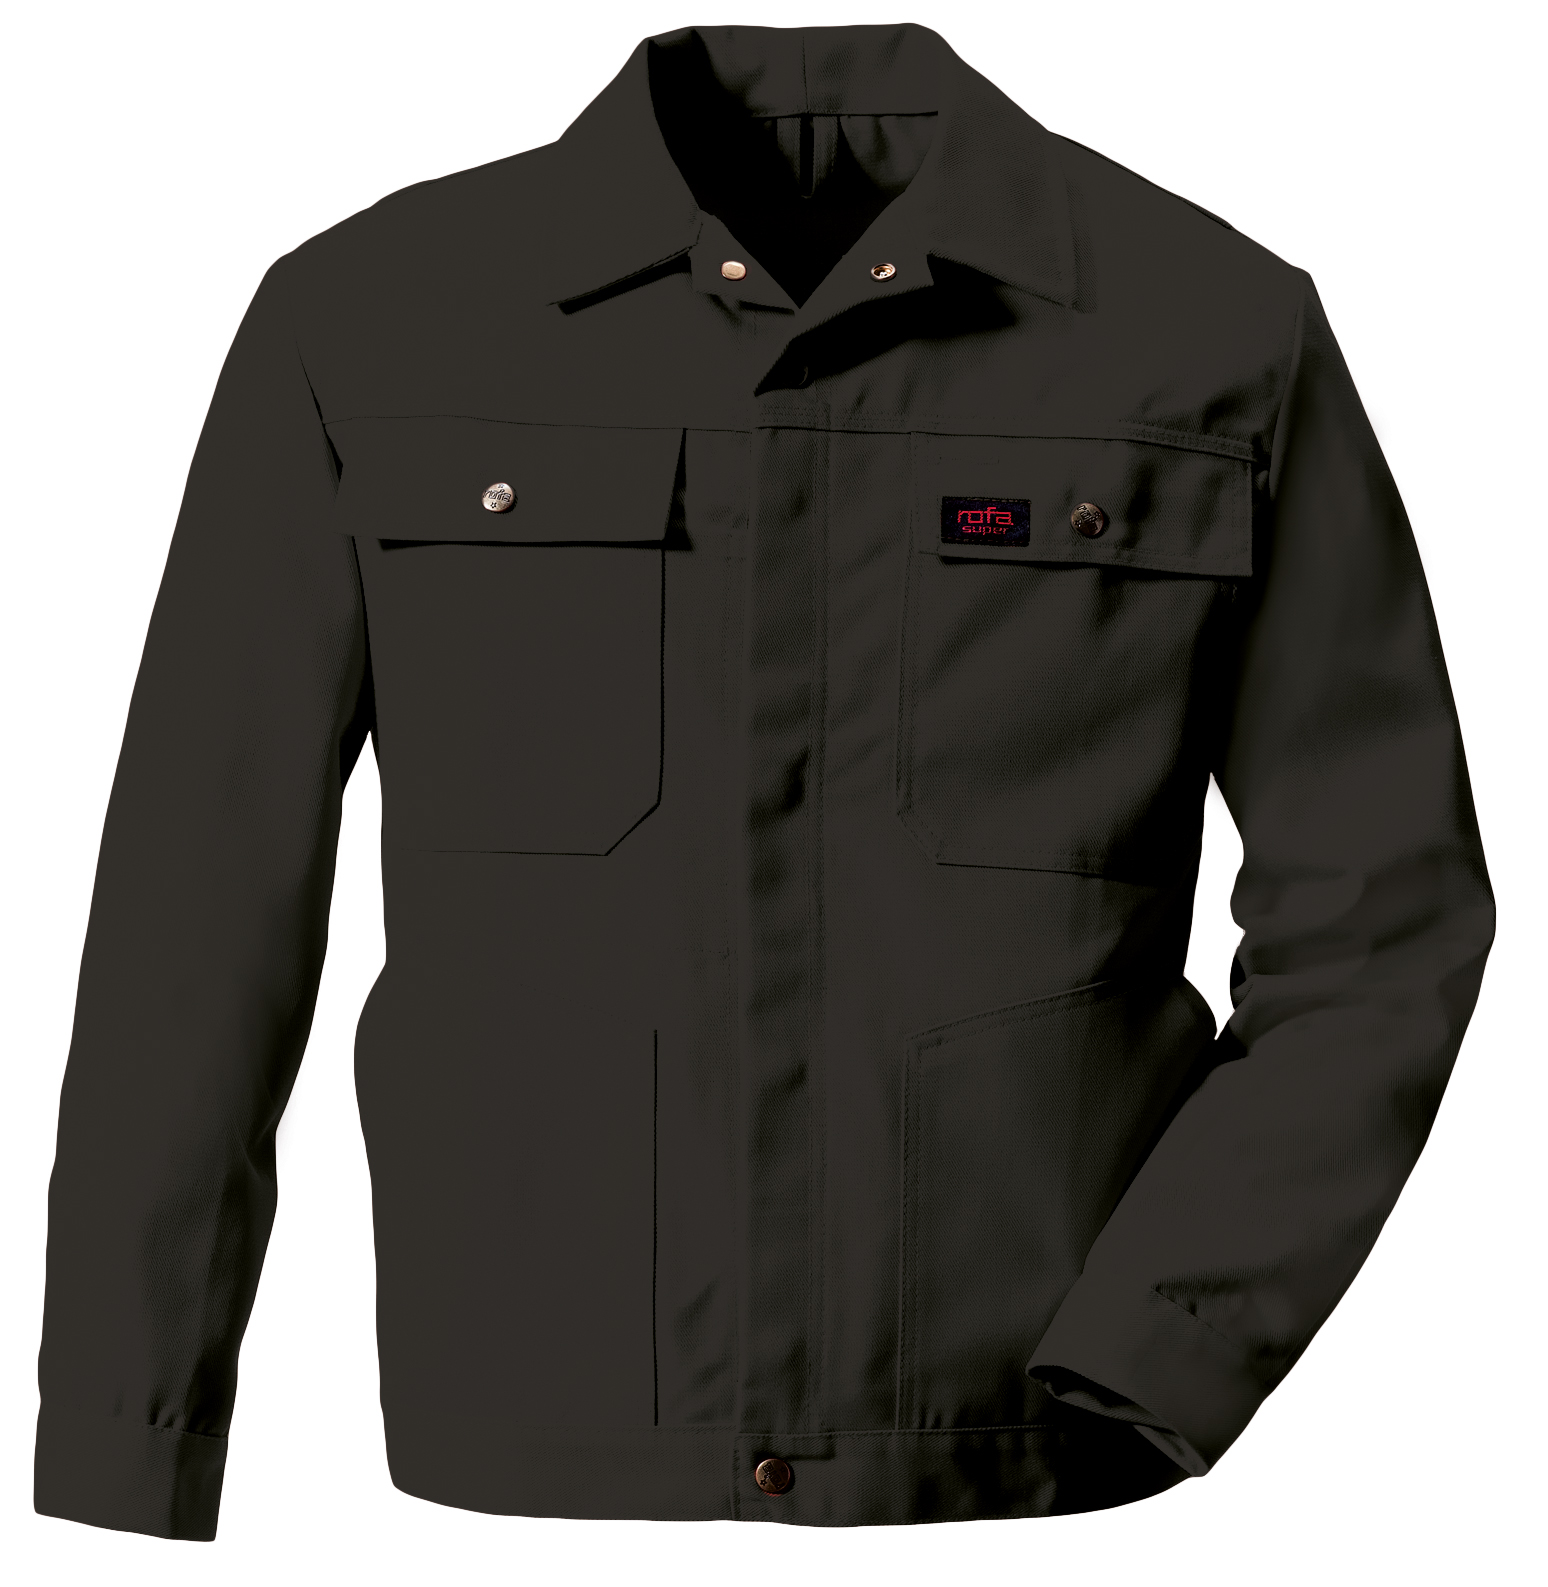 ROFA Blousonjacke Arbeitsjacke Berufsjacke Schutzjacke Arbeitskleidung Berufskleidung Super schwarz ca 360 g